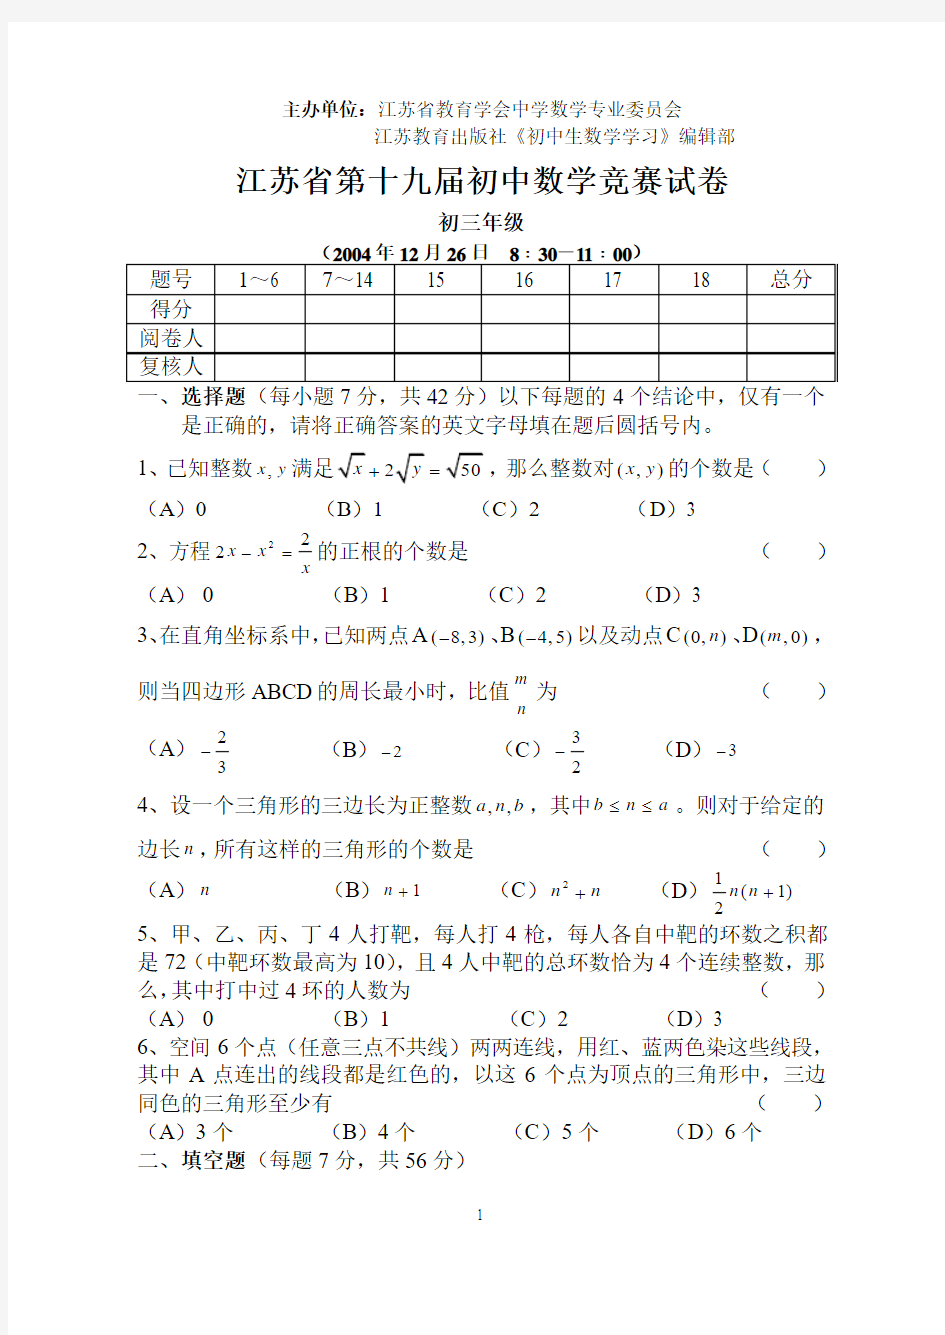 江苏省第十九届初三数学竞赛试卷(附答案)